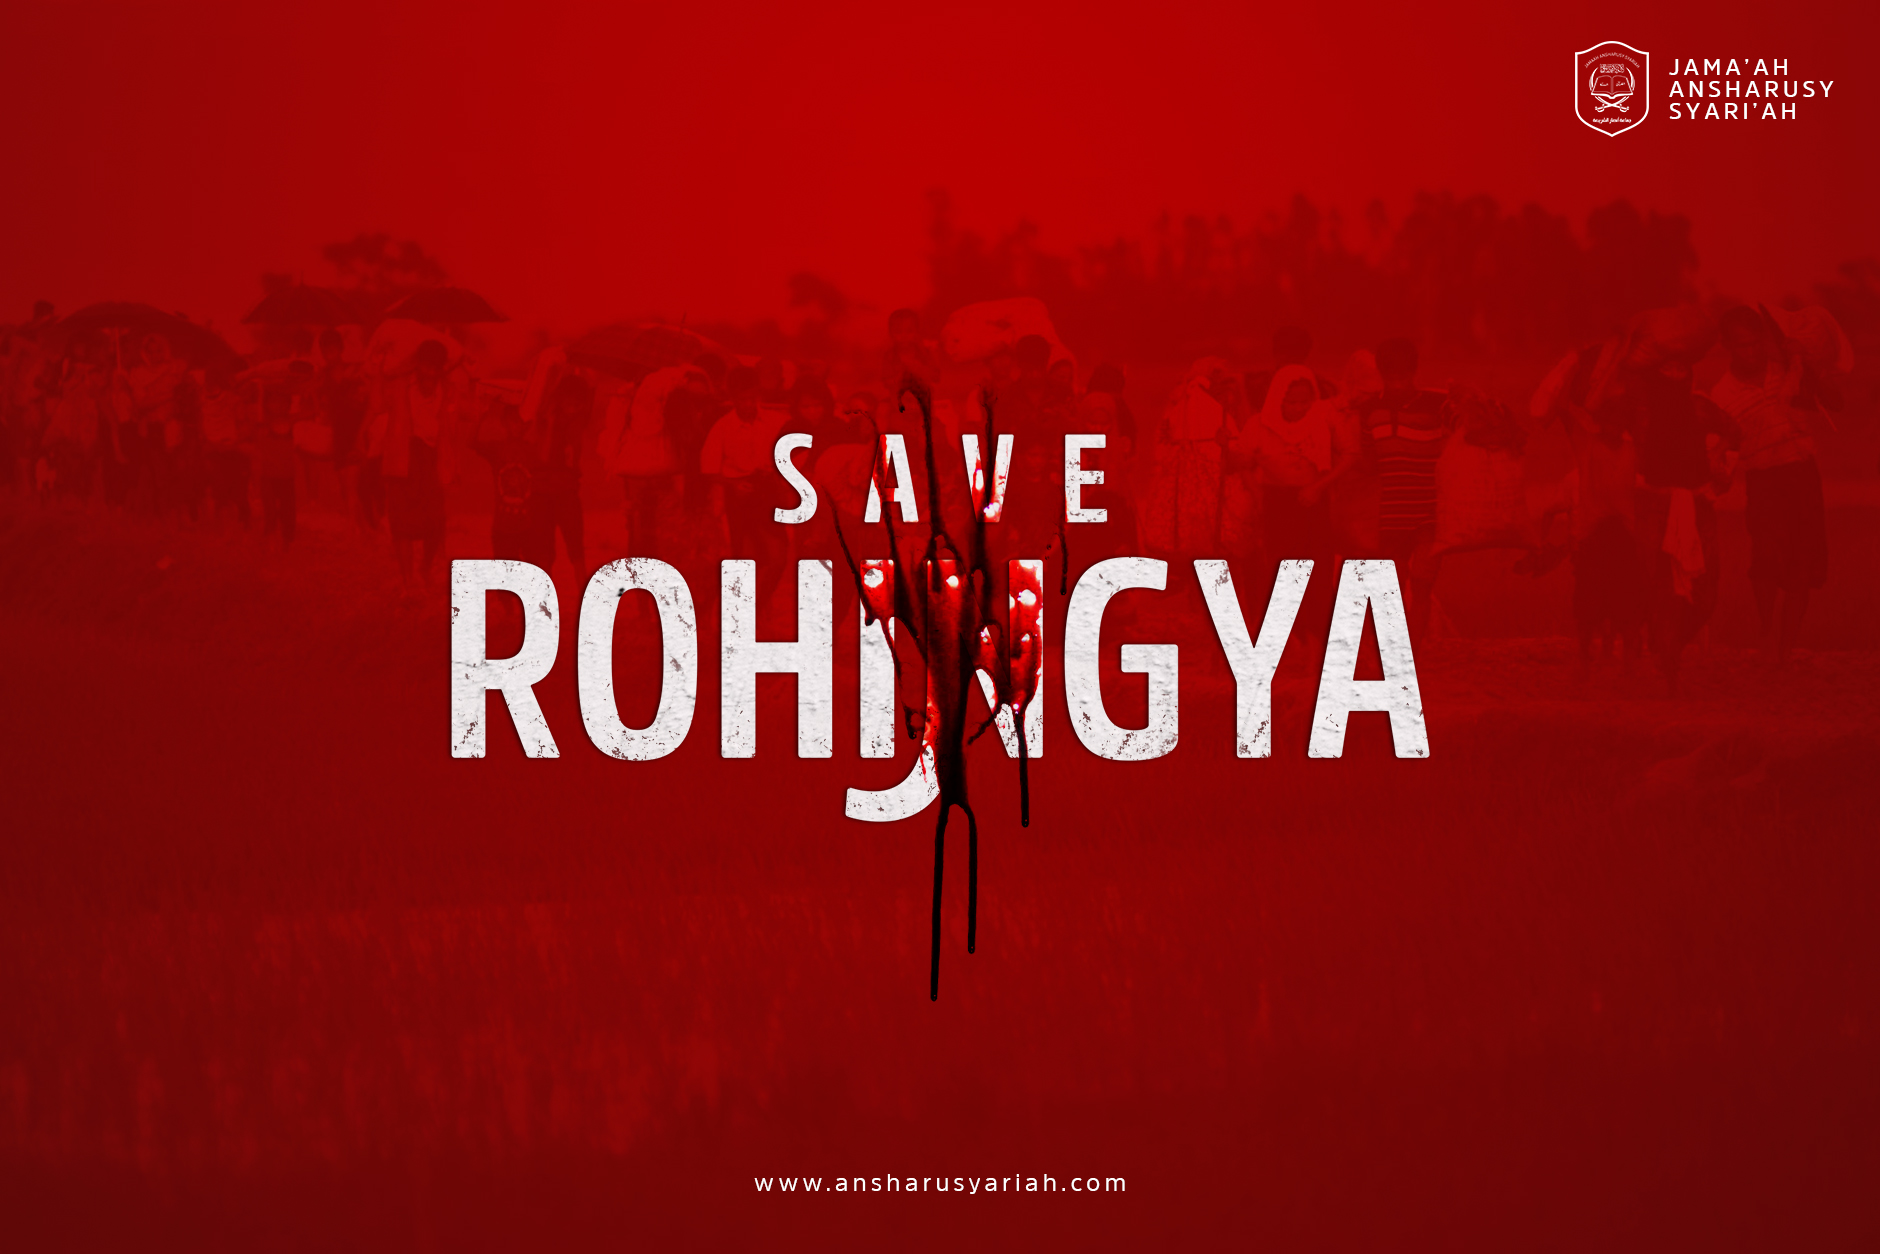 Ansharusyariah Serukan Umat Islam Bantu Muslim Rohingya